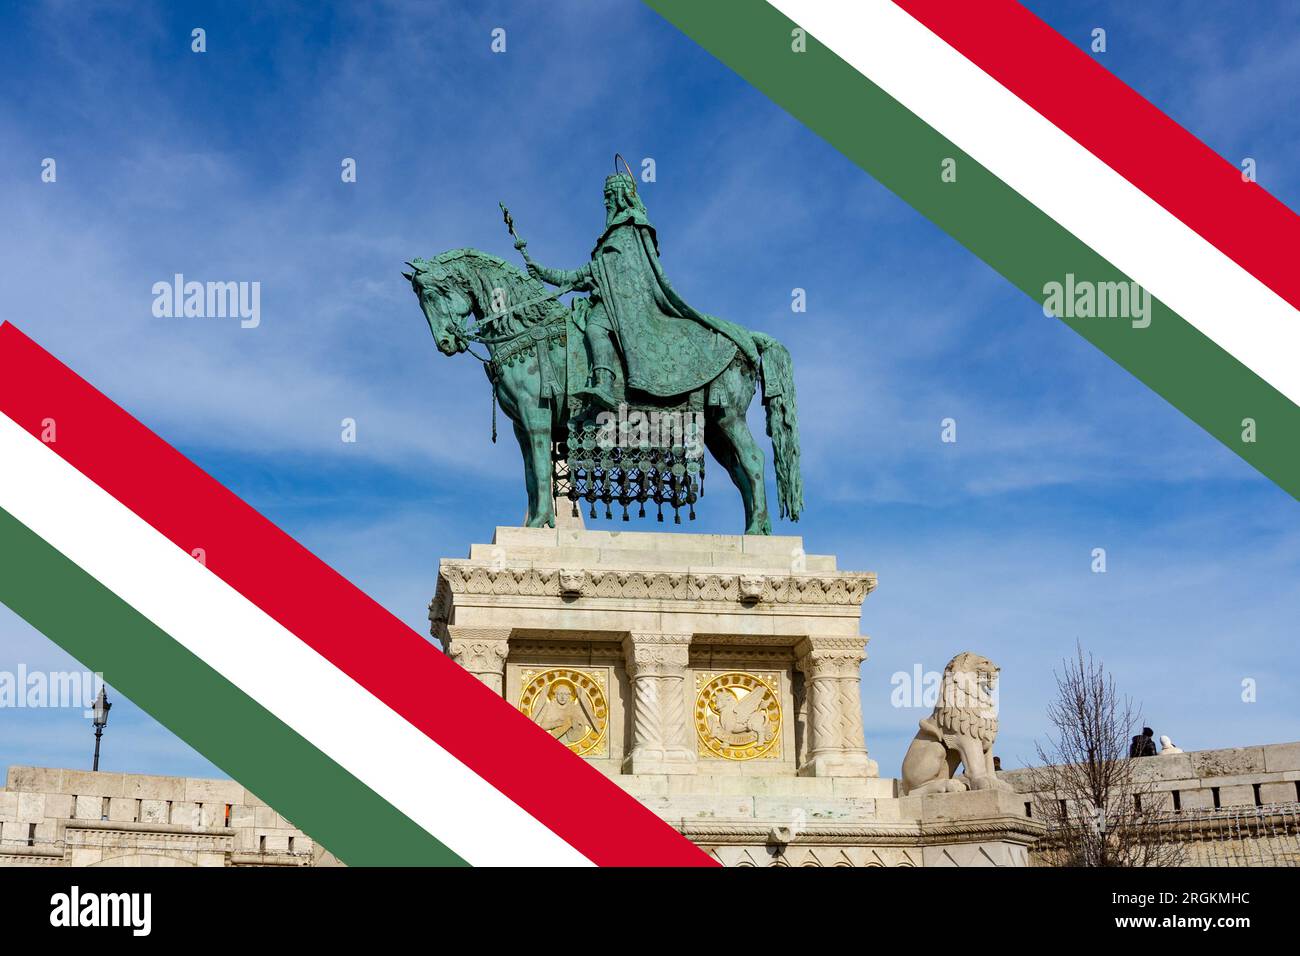 statua di santo stefano szent istvan con bandiera ungherese per la celebrazione nazionale ungherese del 20 agosto. Foto Stock